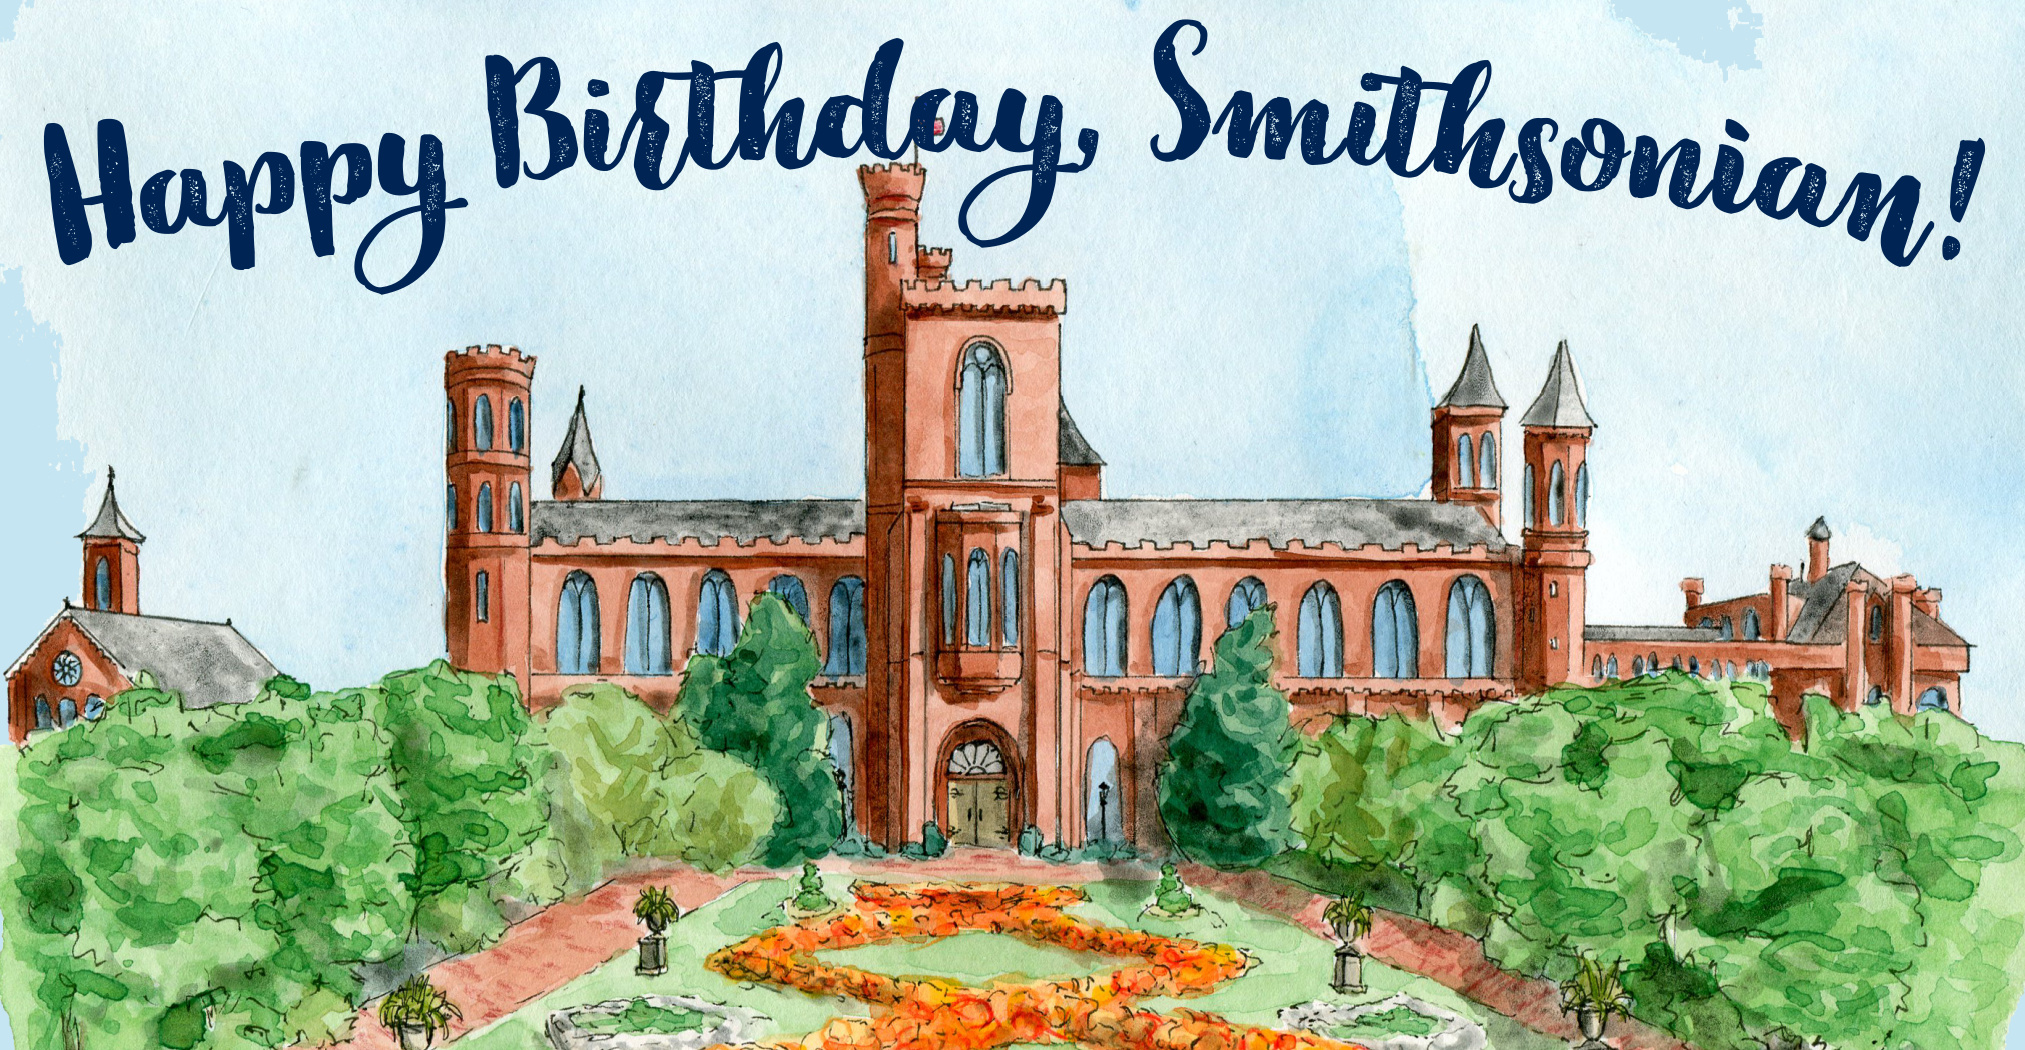 Happy Birthday, Smithsonian!